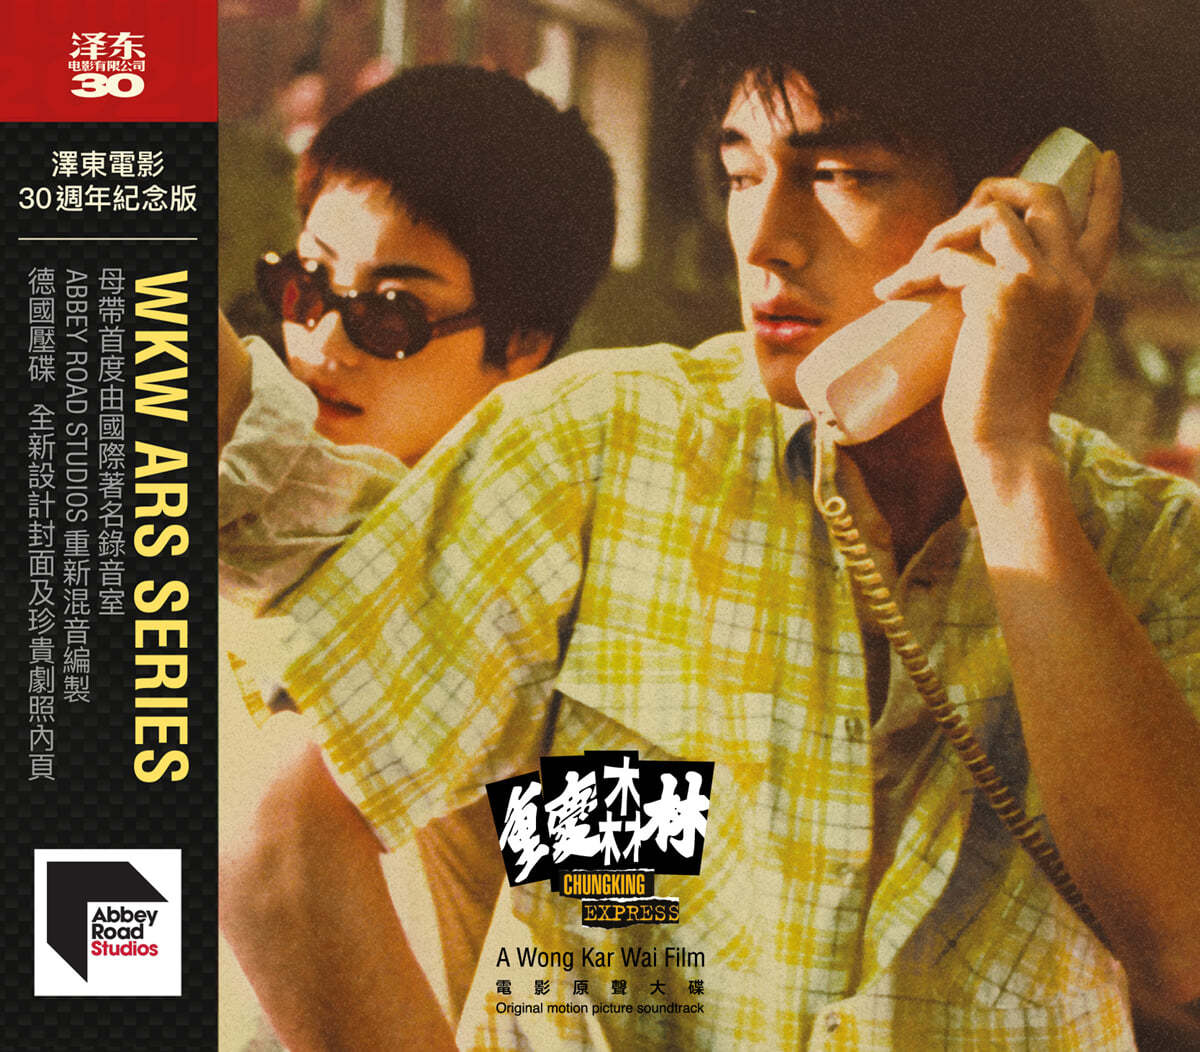 중경삼림 영화음악 (Chungking Express 重慶森林 OST)